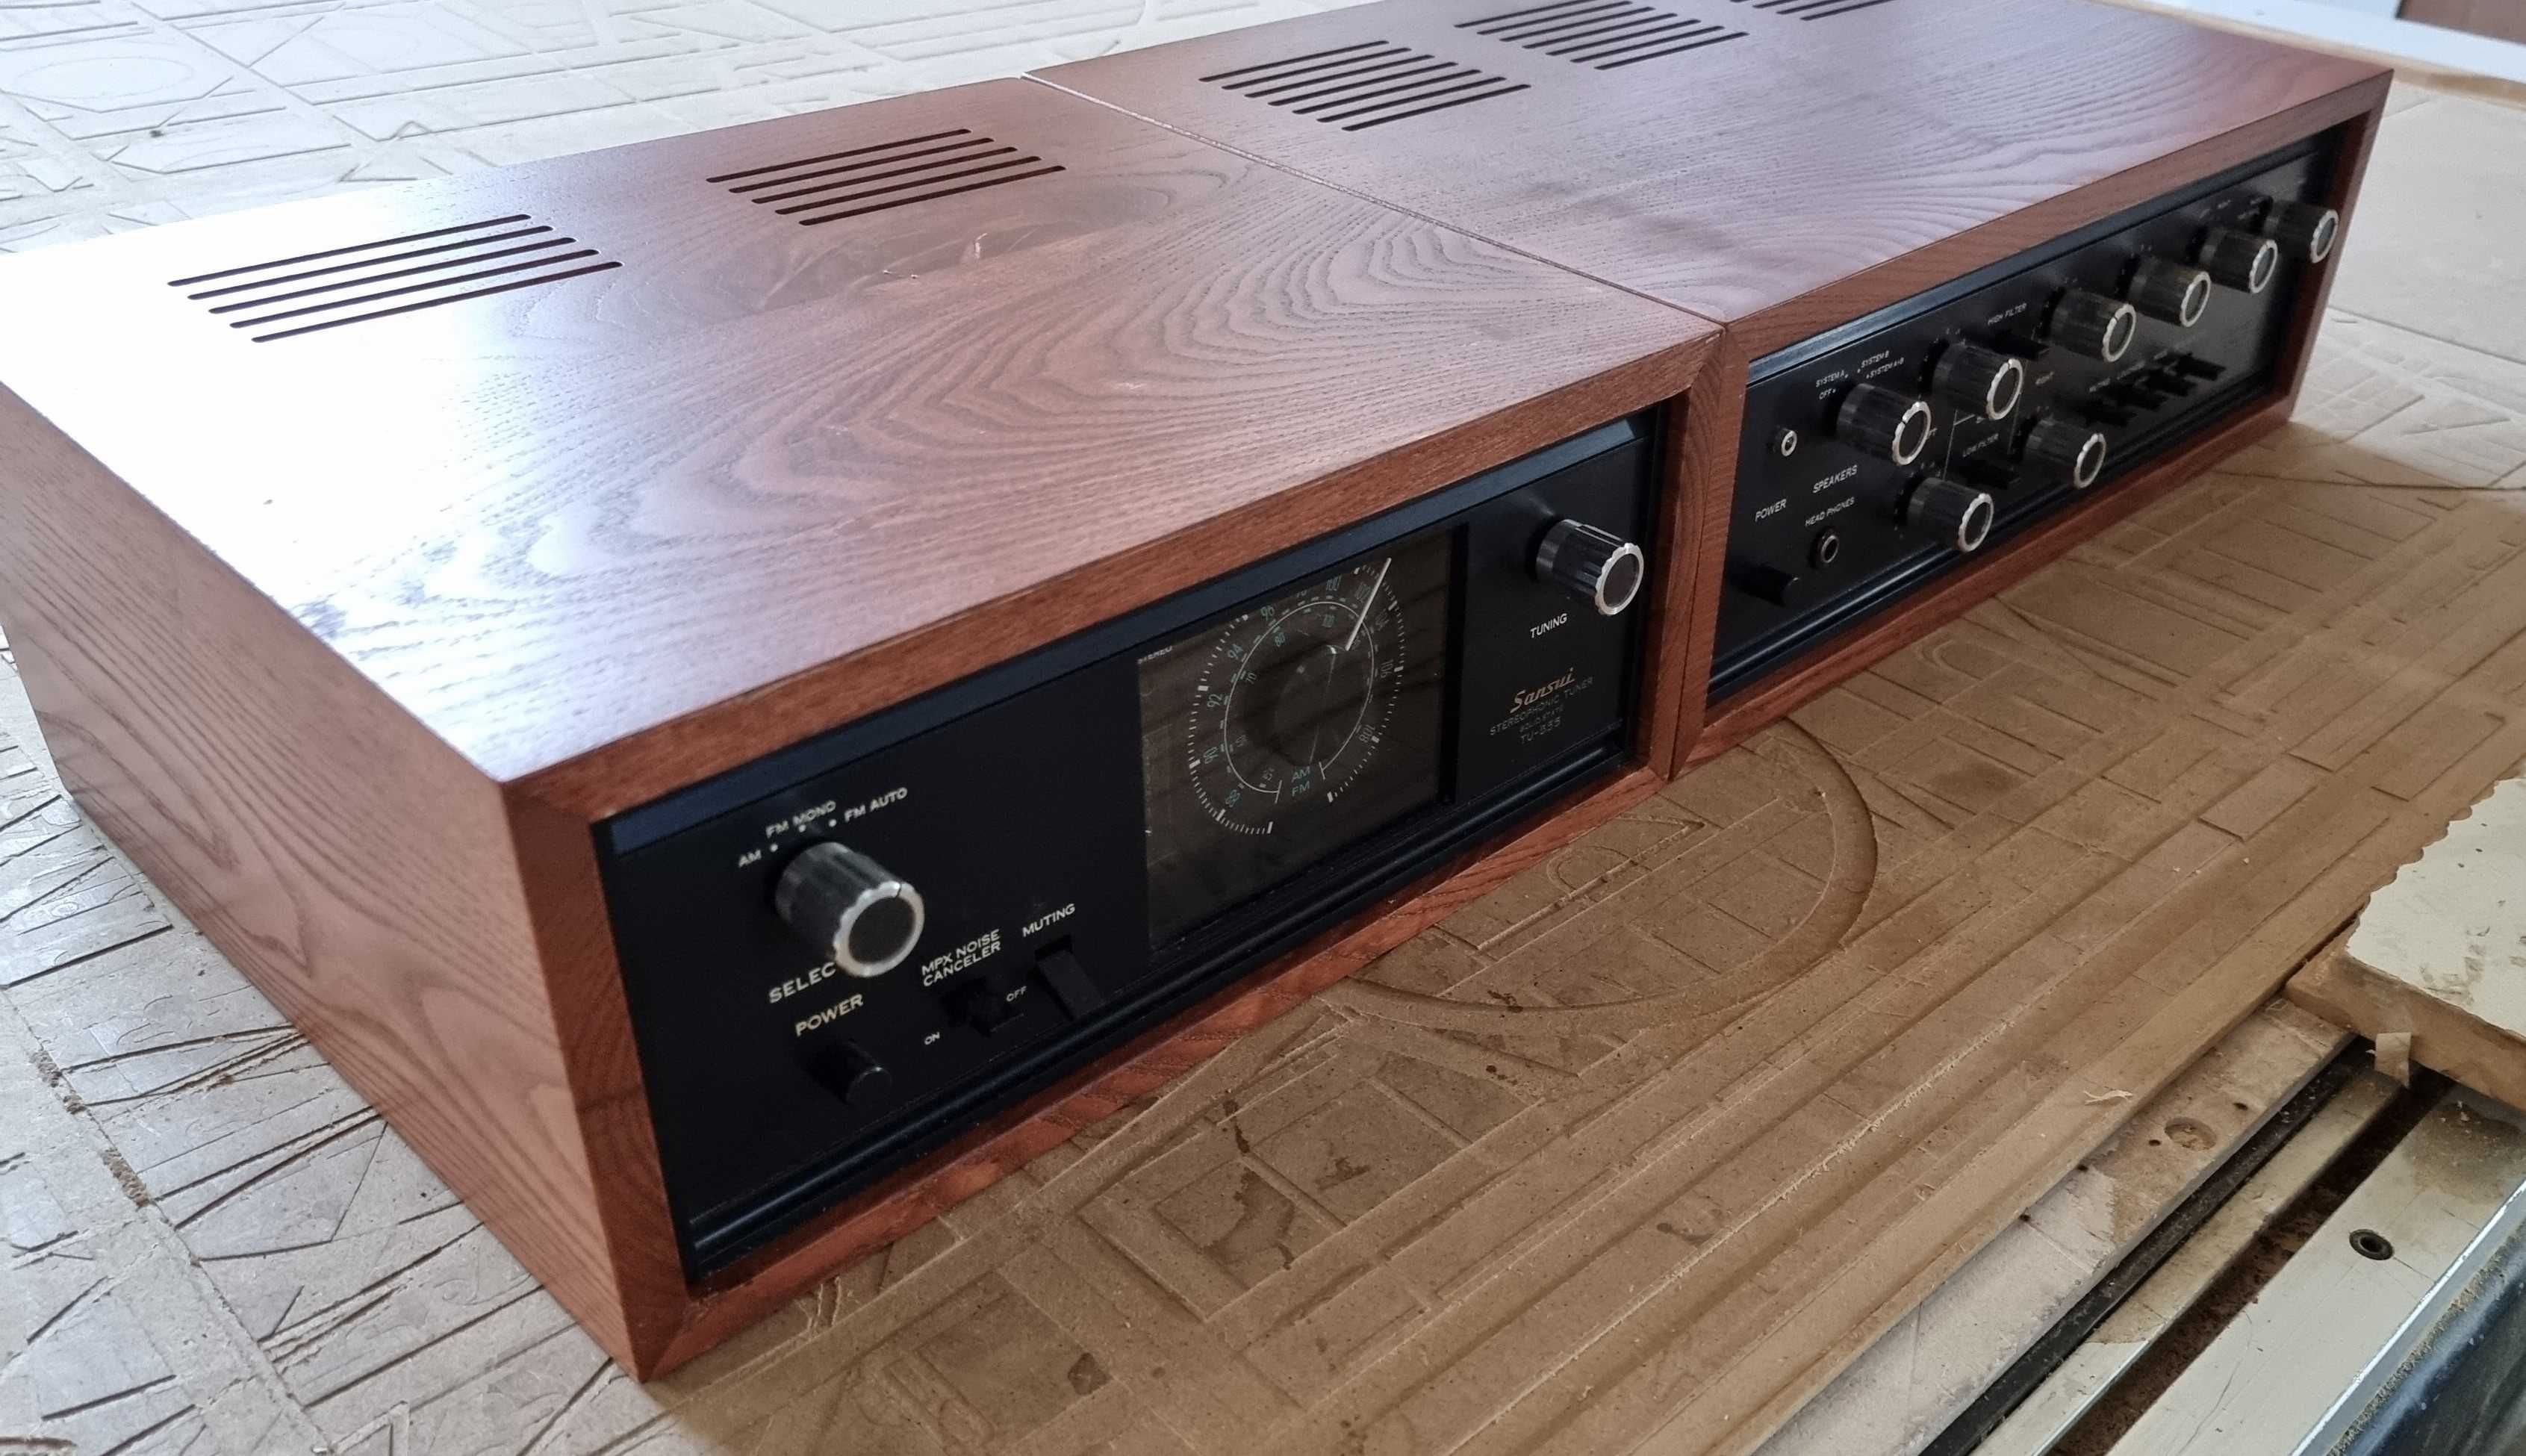 Laterale si cutii lemn pentru audio, Technics, Revox, Pioneer, Tascam